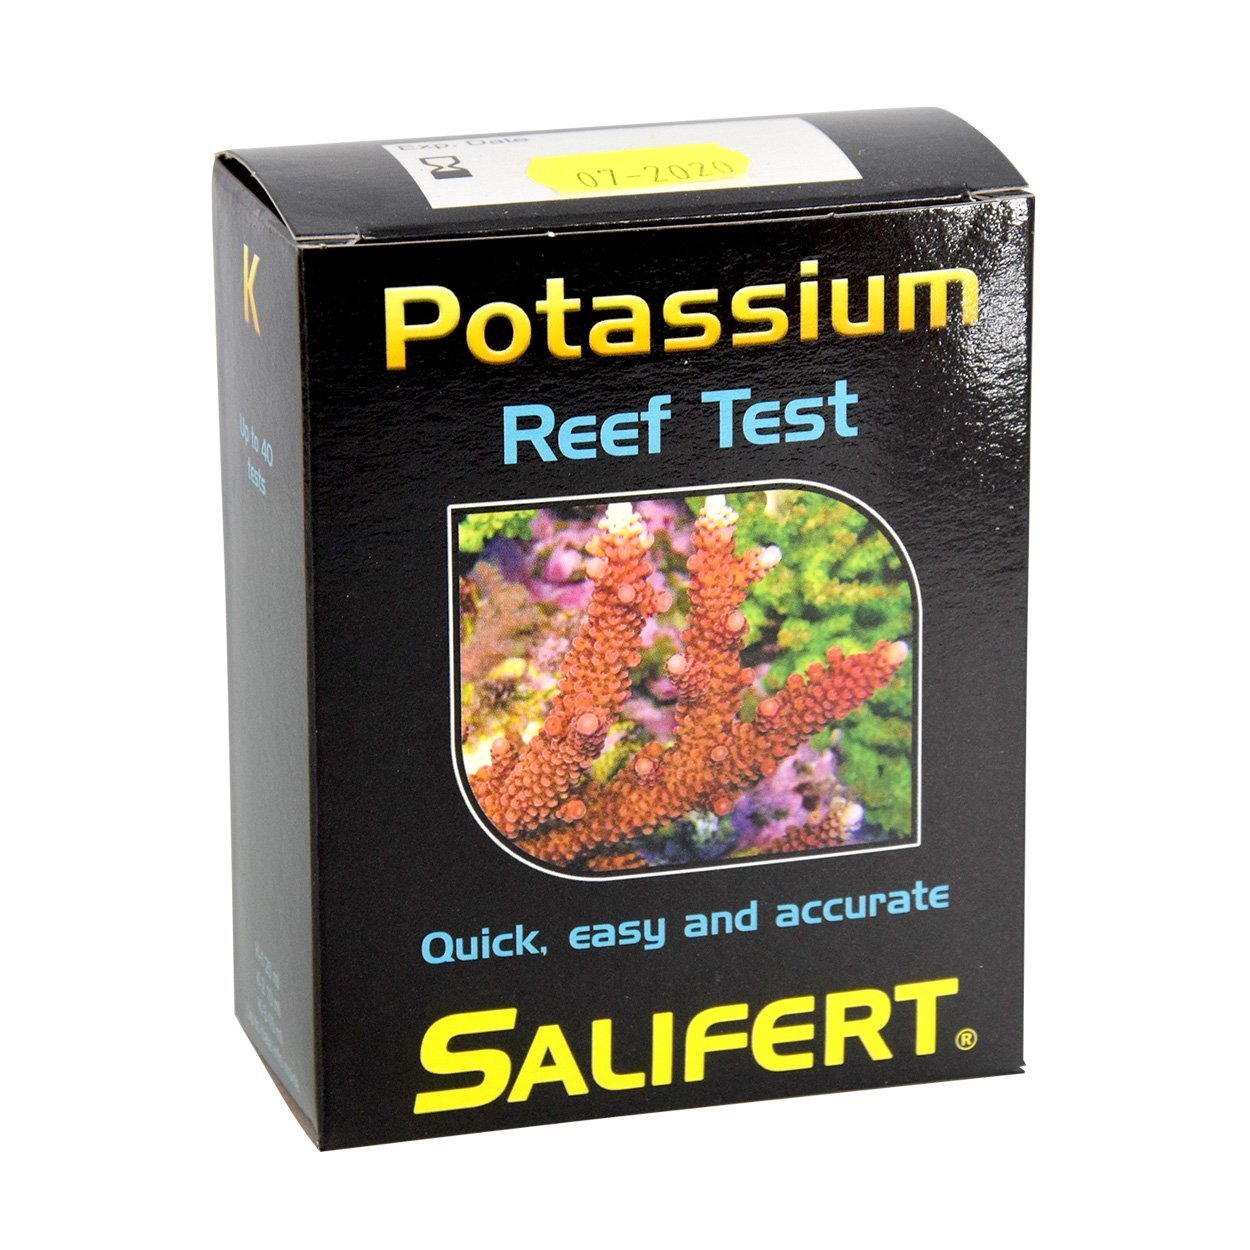 Salifert Potassium Reef Test, Salifert